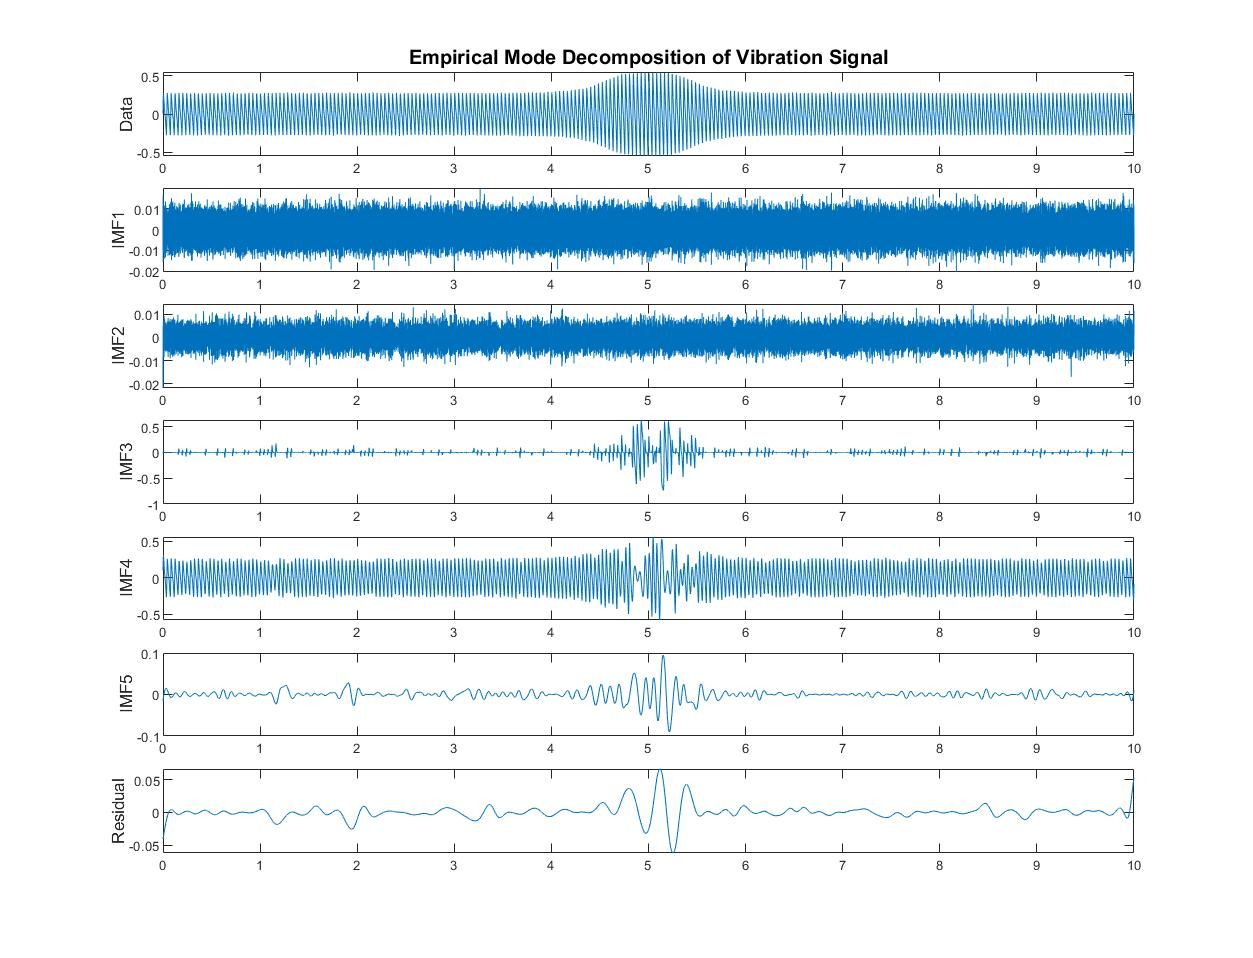 Signal de vibration analysé dans MATLAB avec la décomposition en modes empiriques